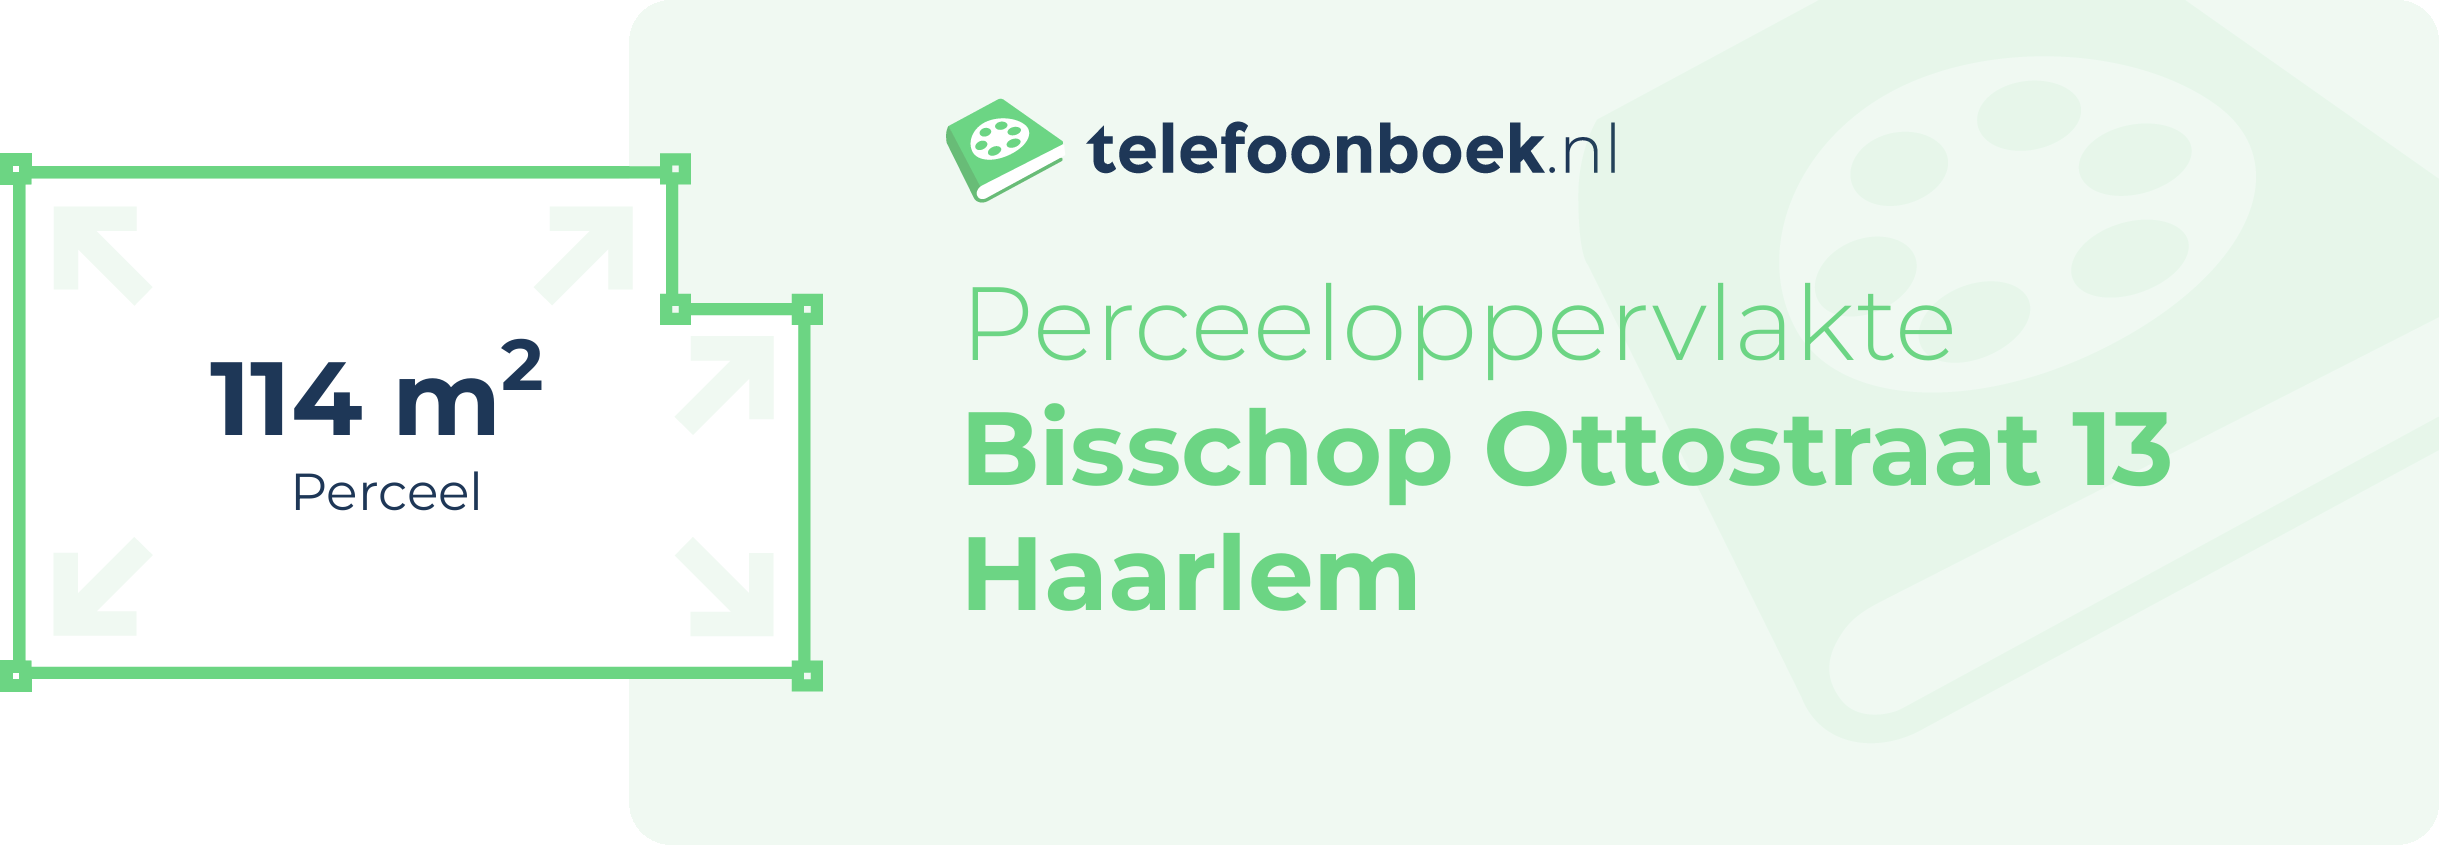 Perceeloppervlakte Bisschop Ottostraat 13 Haarlem